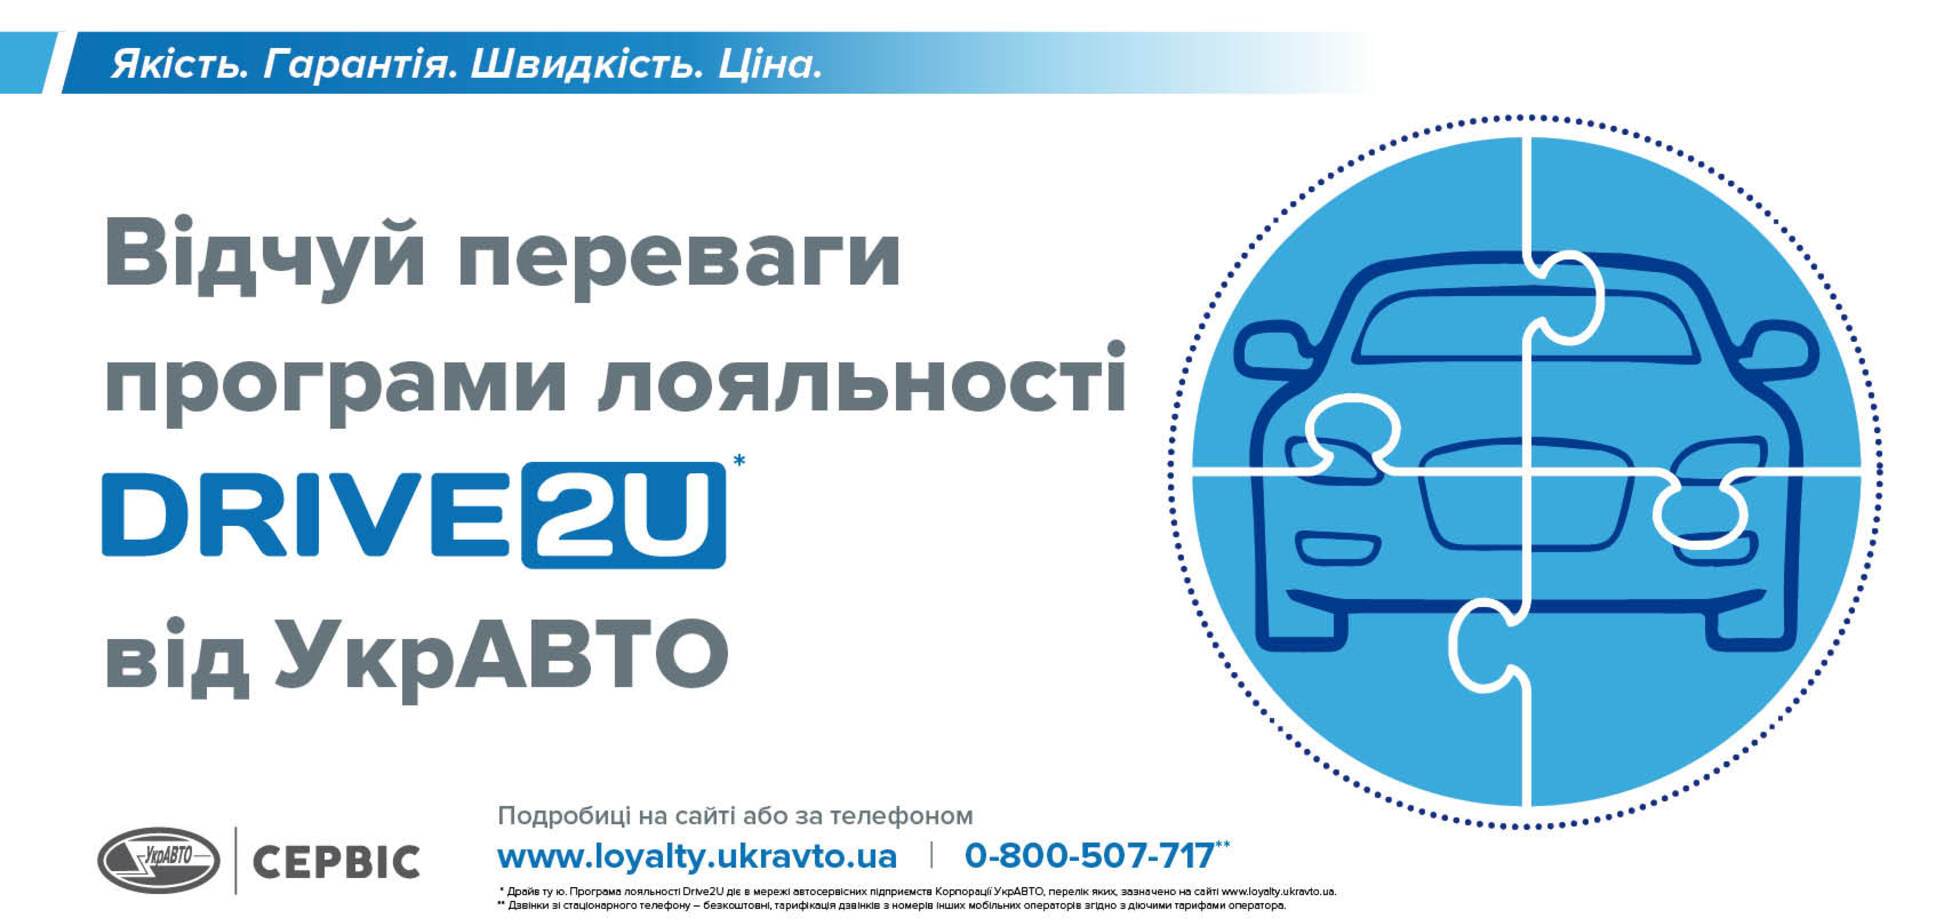 УкрАВТО предложила новую программу лояльности Drive2U